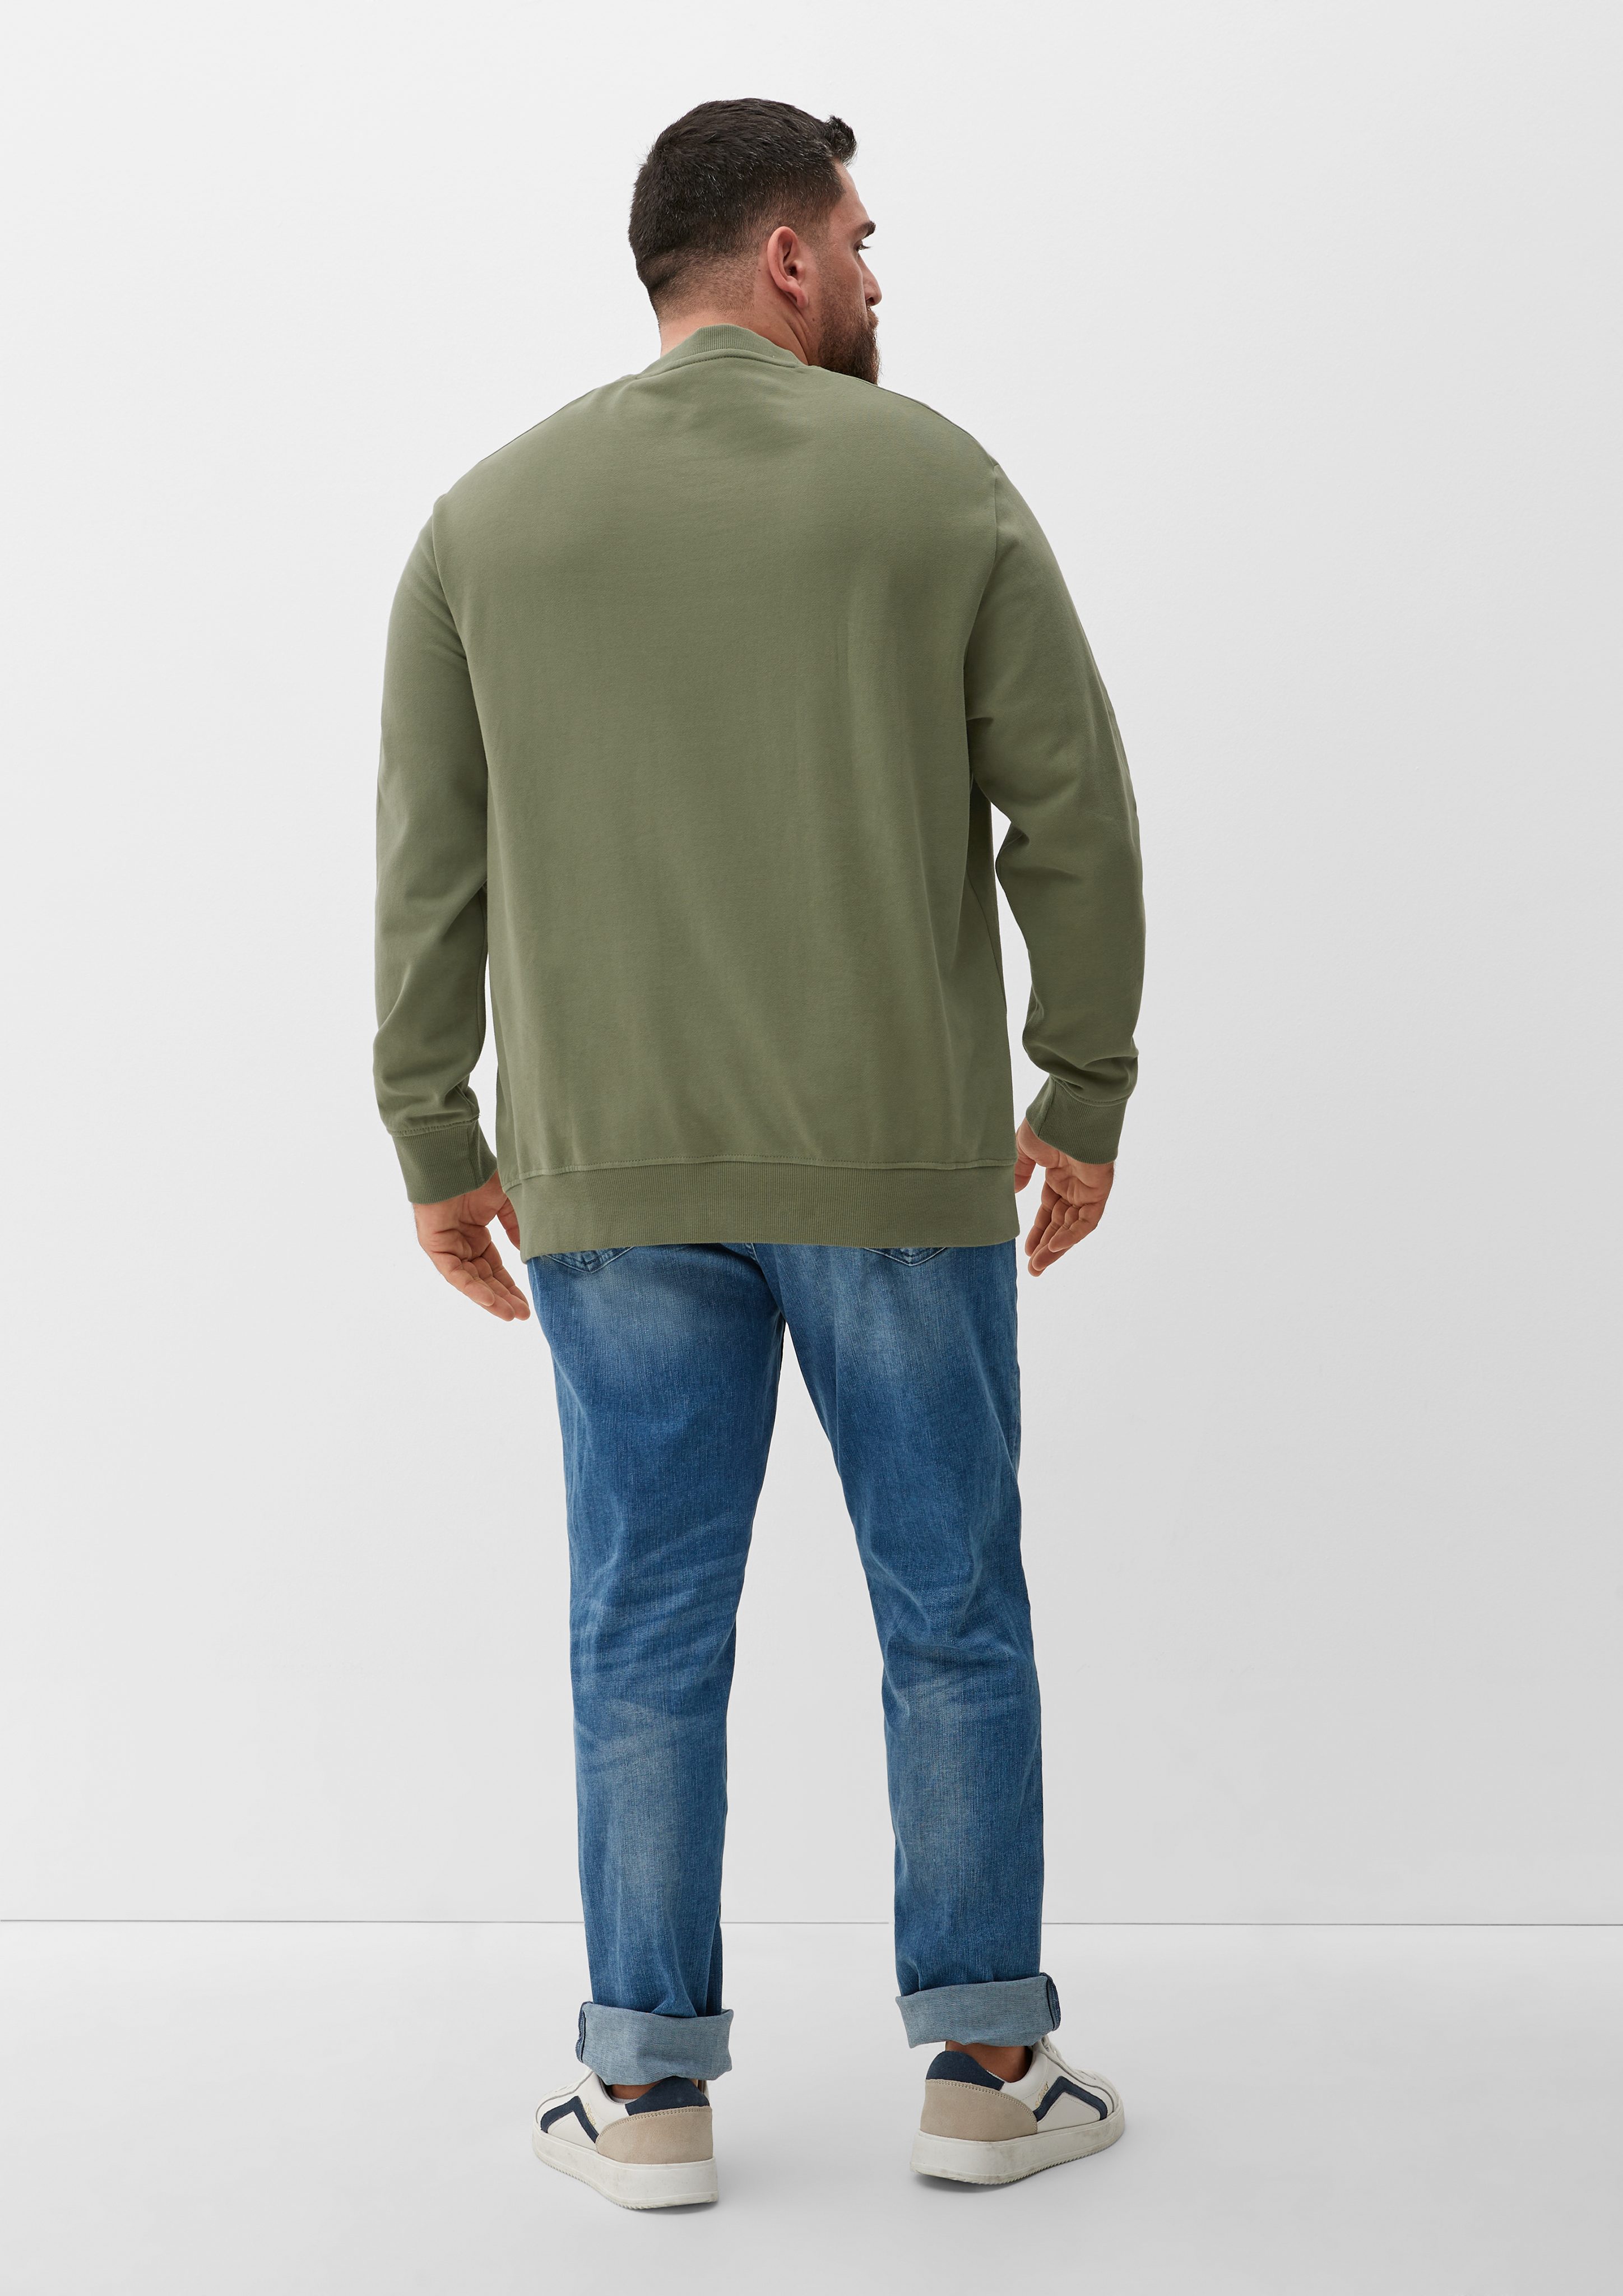 olivgrün Sweatshirt mit s.Oliver Sweatshirt Frontprint